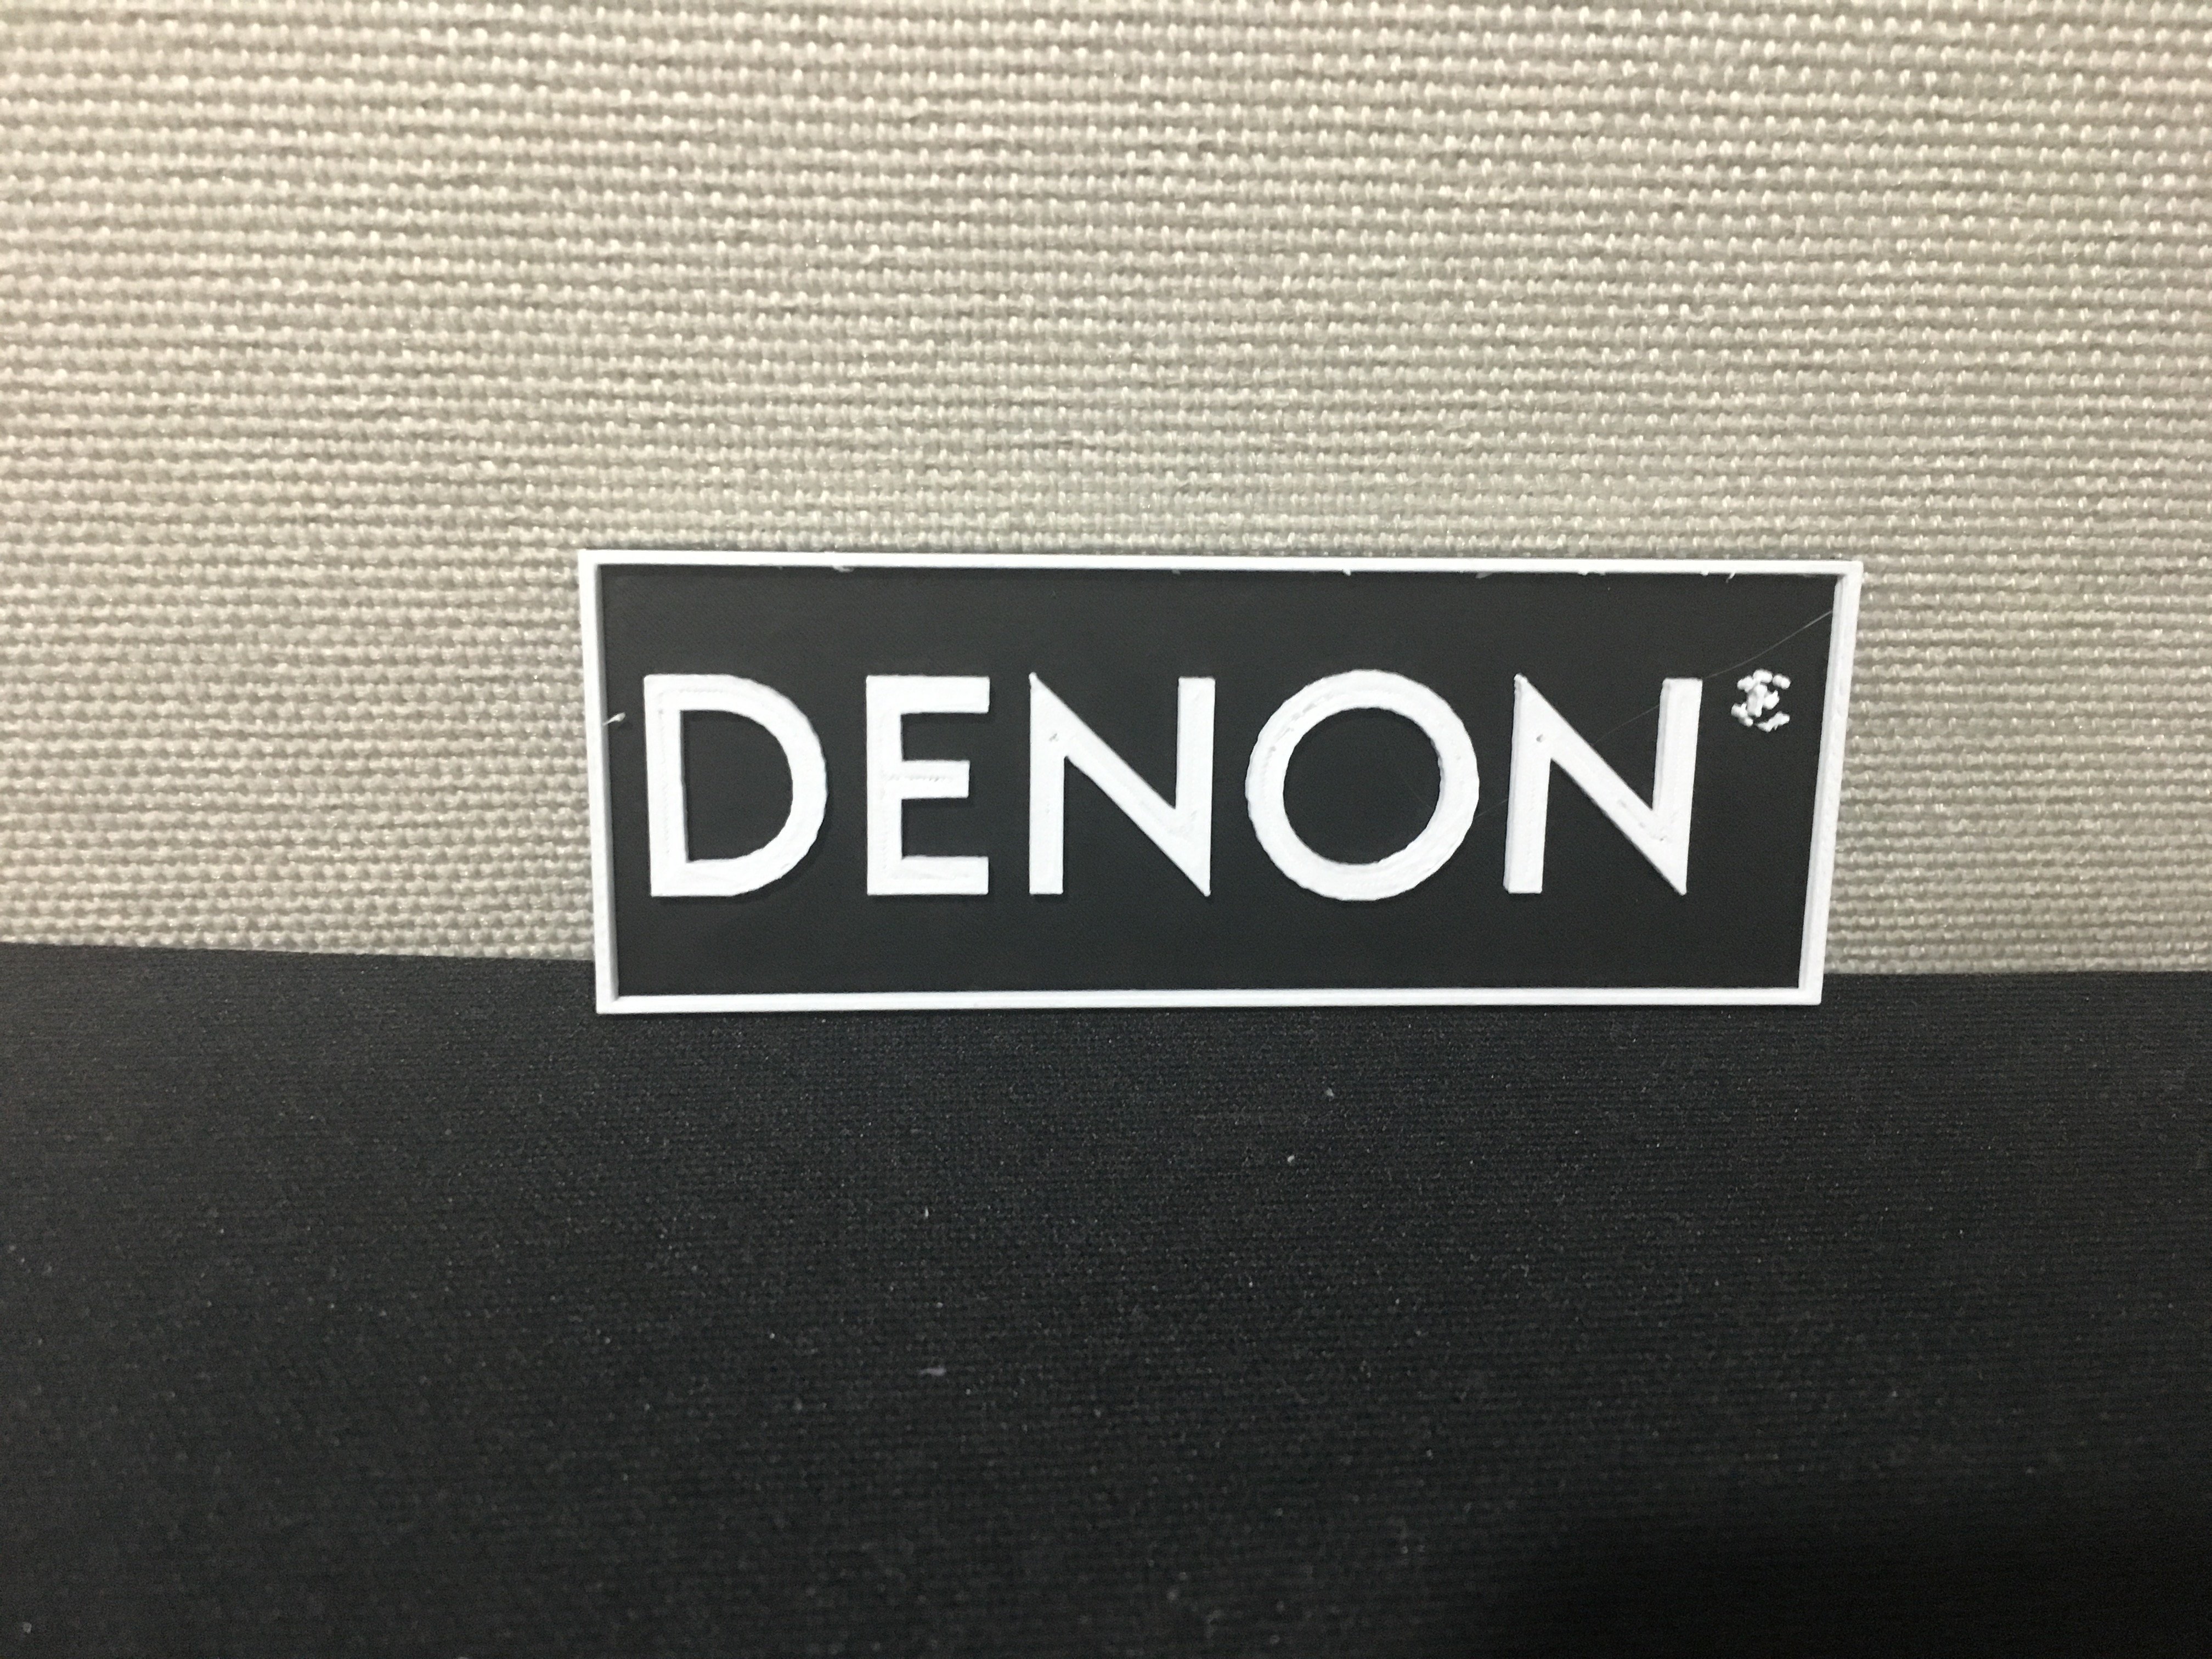 Denon Sign